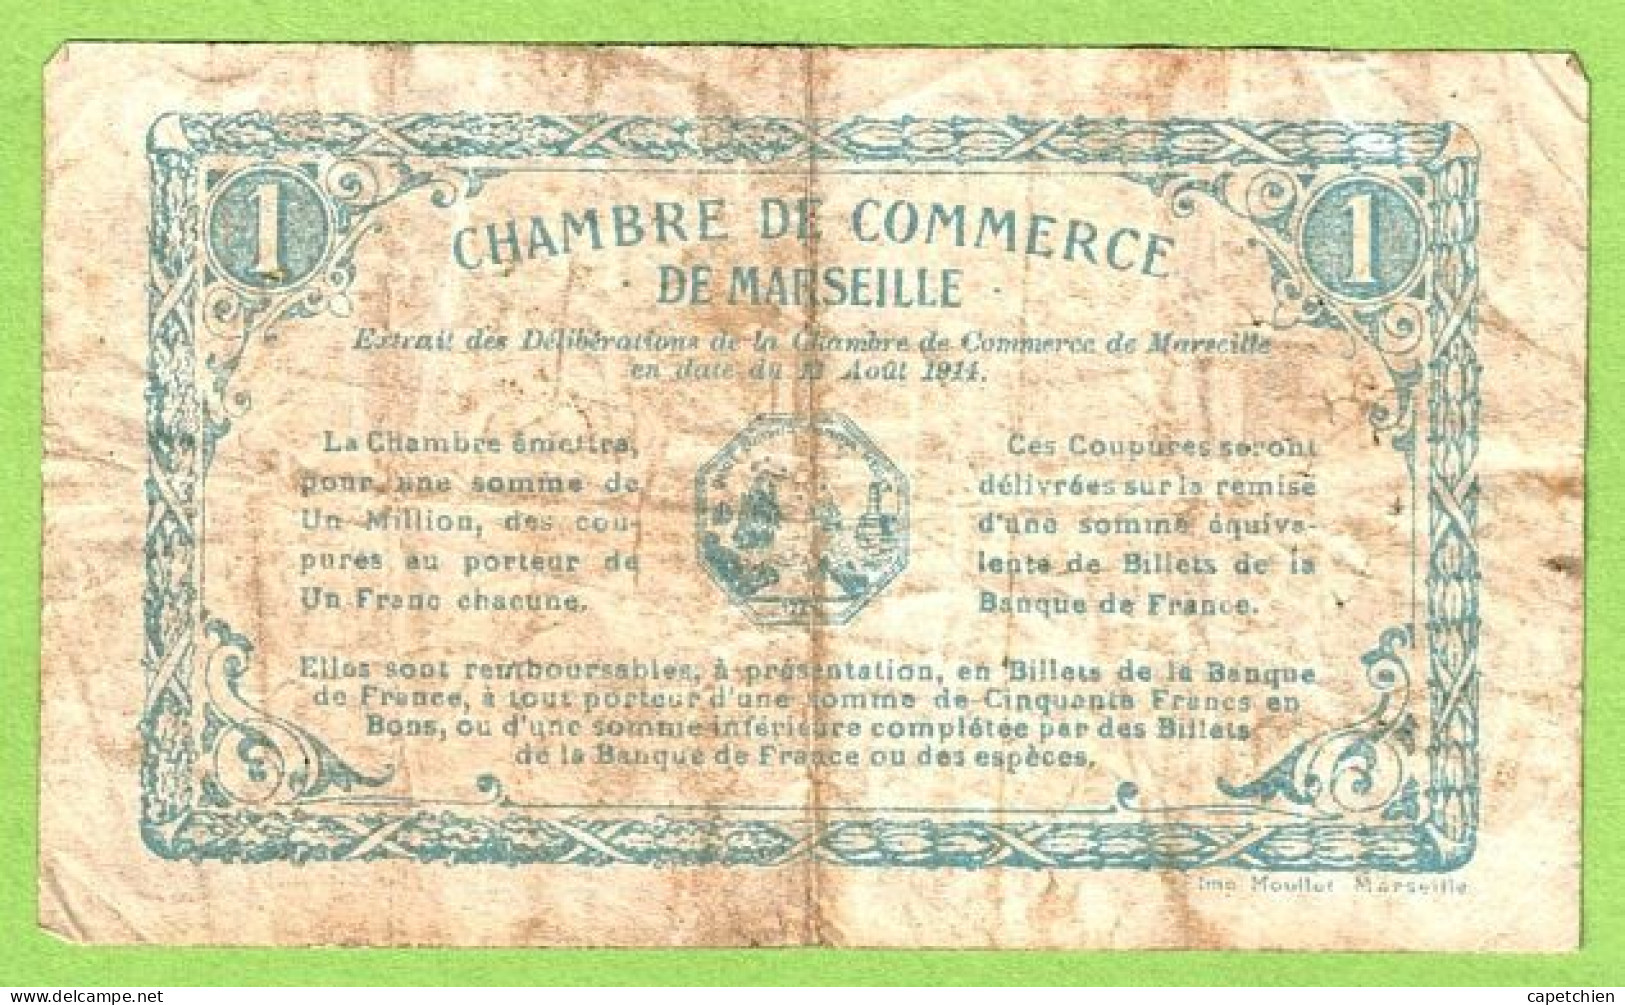 FRANCE / CHAMBRE De COMMERCE / MARSEILLE / 1 FRANC / 13 AOUT 1914 / N° 97921 / SERIE E - Chambre De Commerce